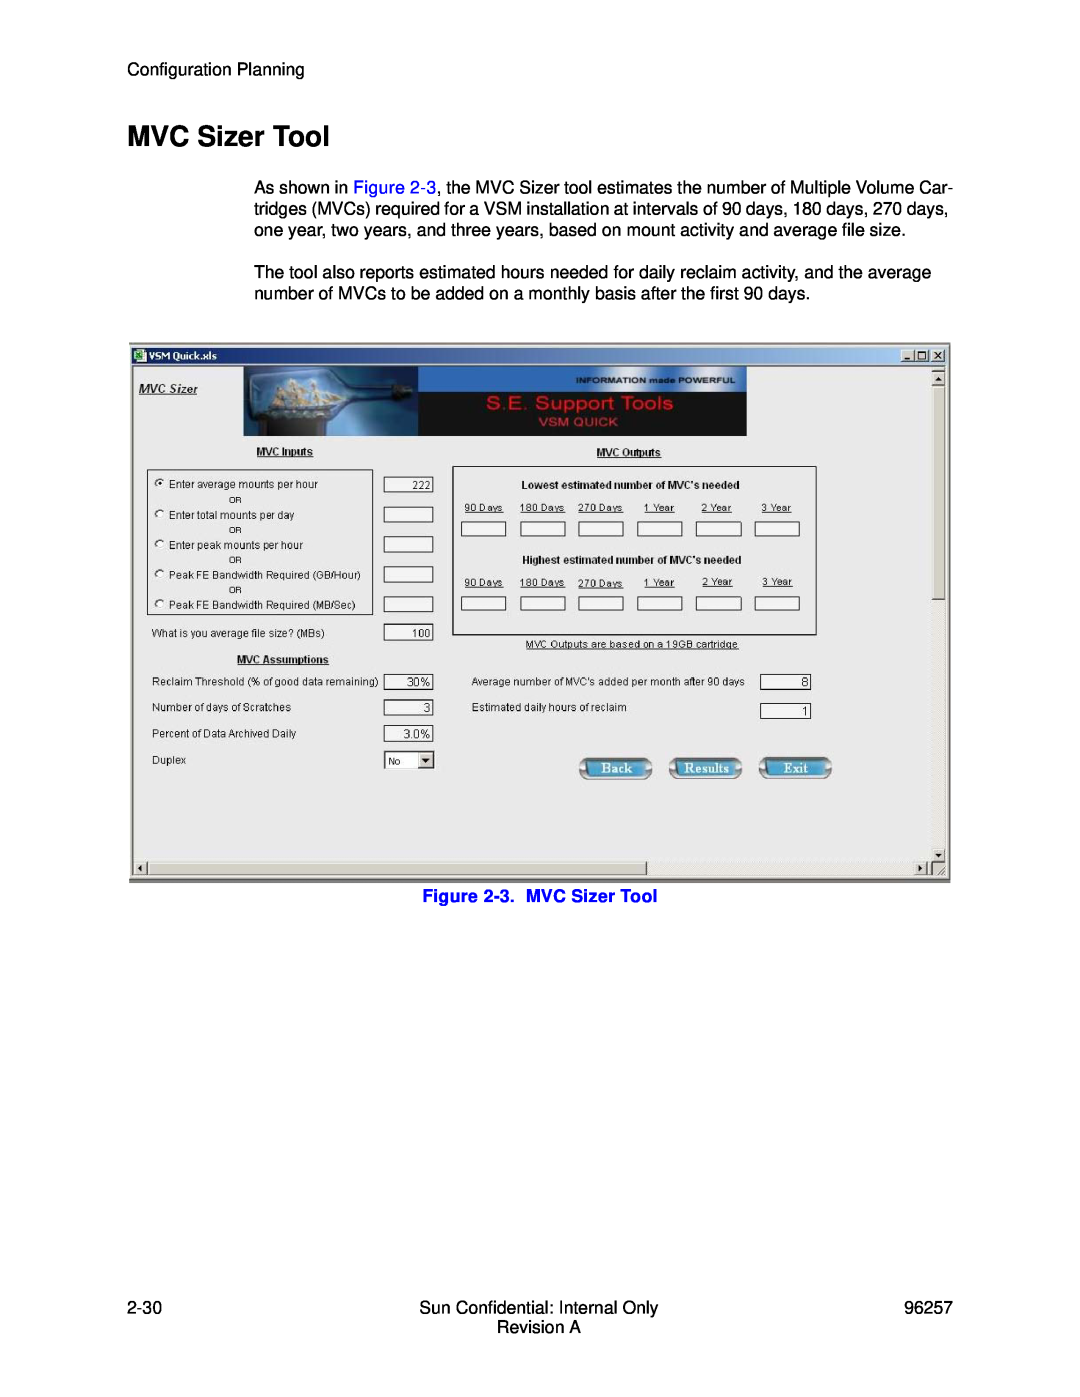 Sun Microsystems 96257 manual 3. MVC Sizer Tool 